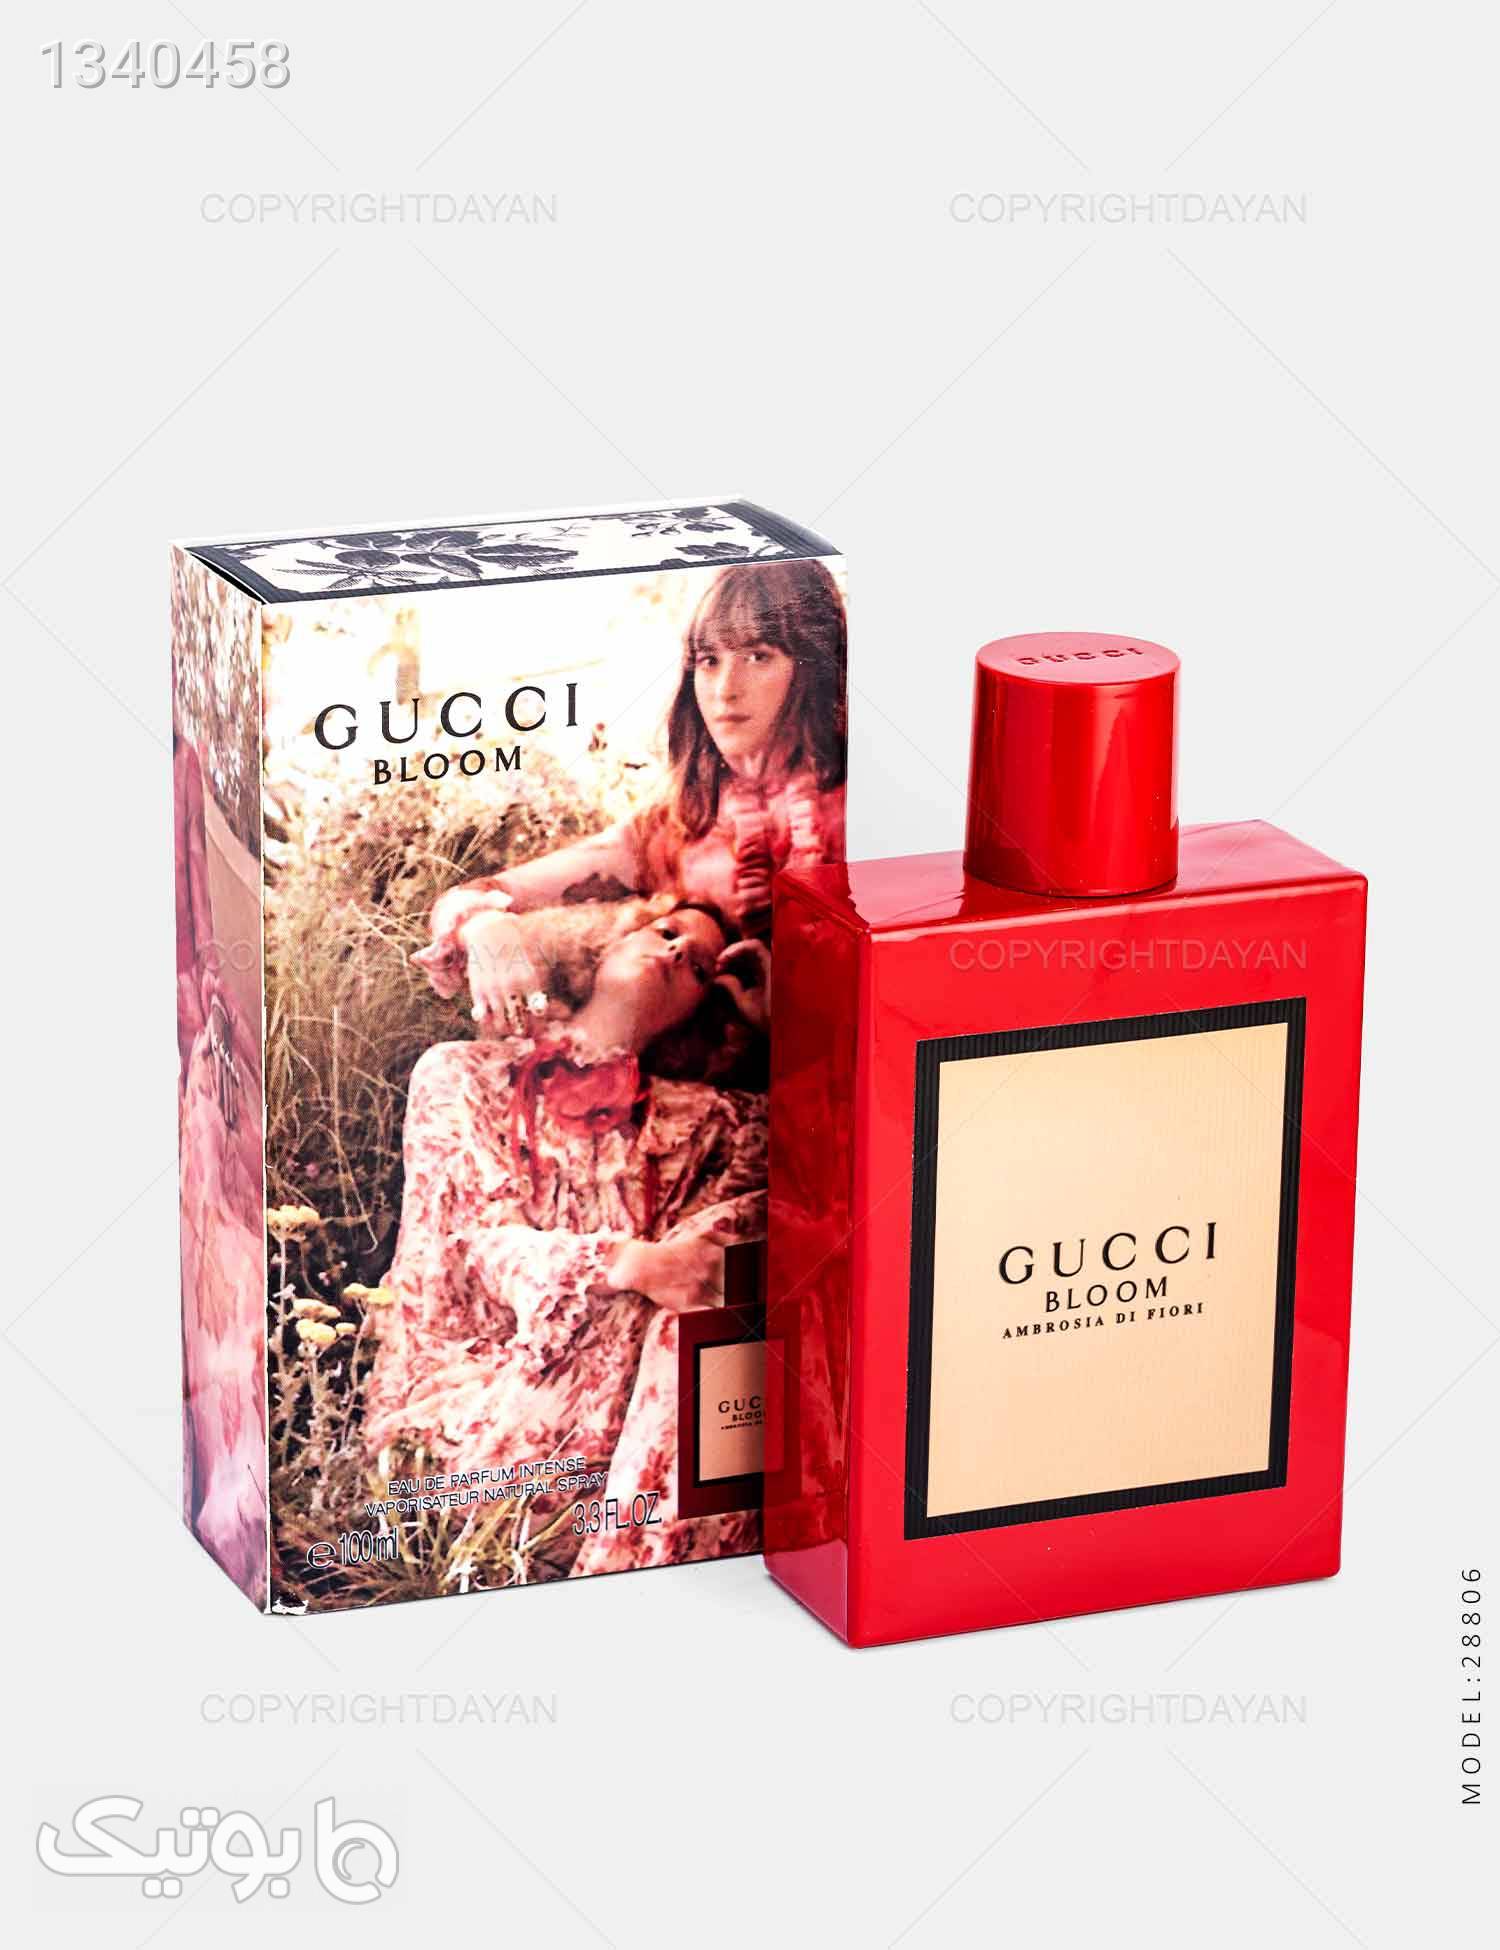 ادکلن زنانه Gucci مدل 28806